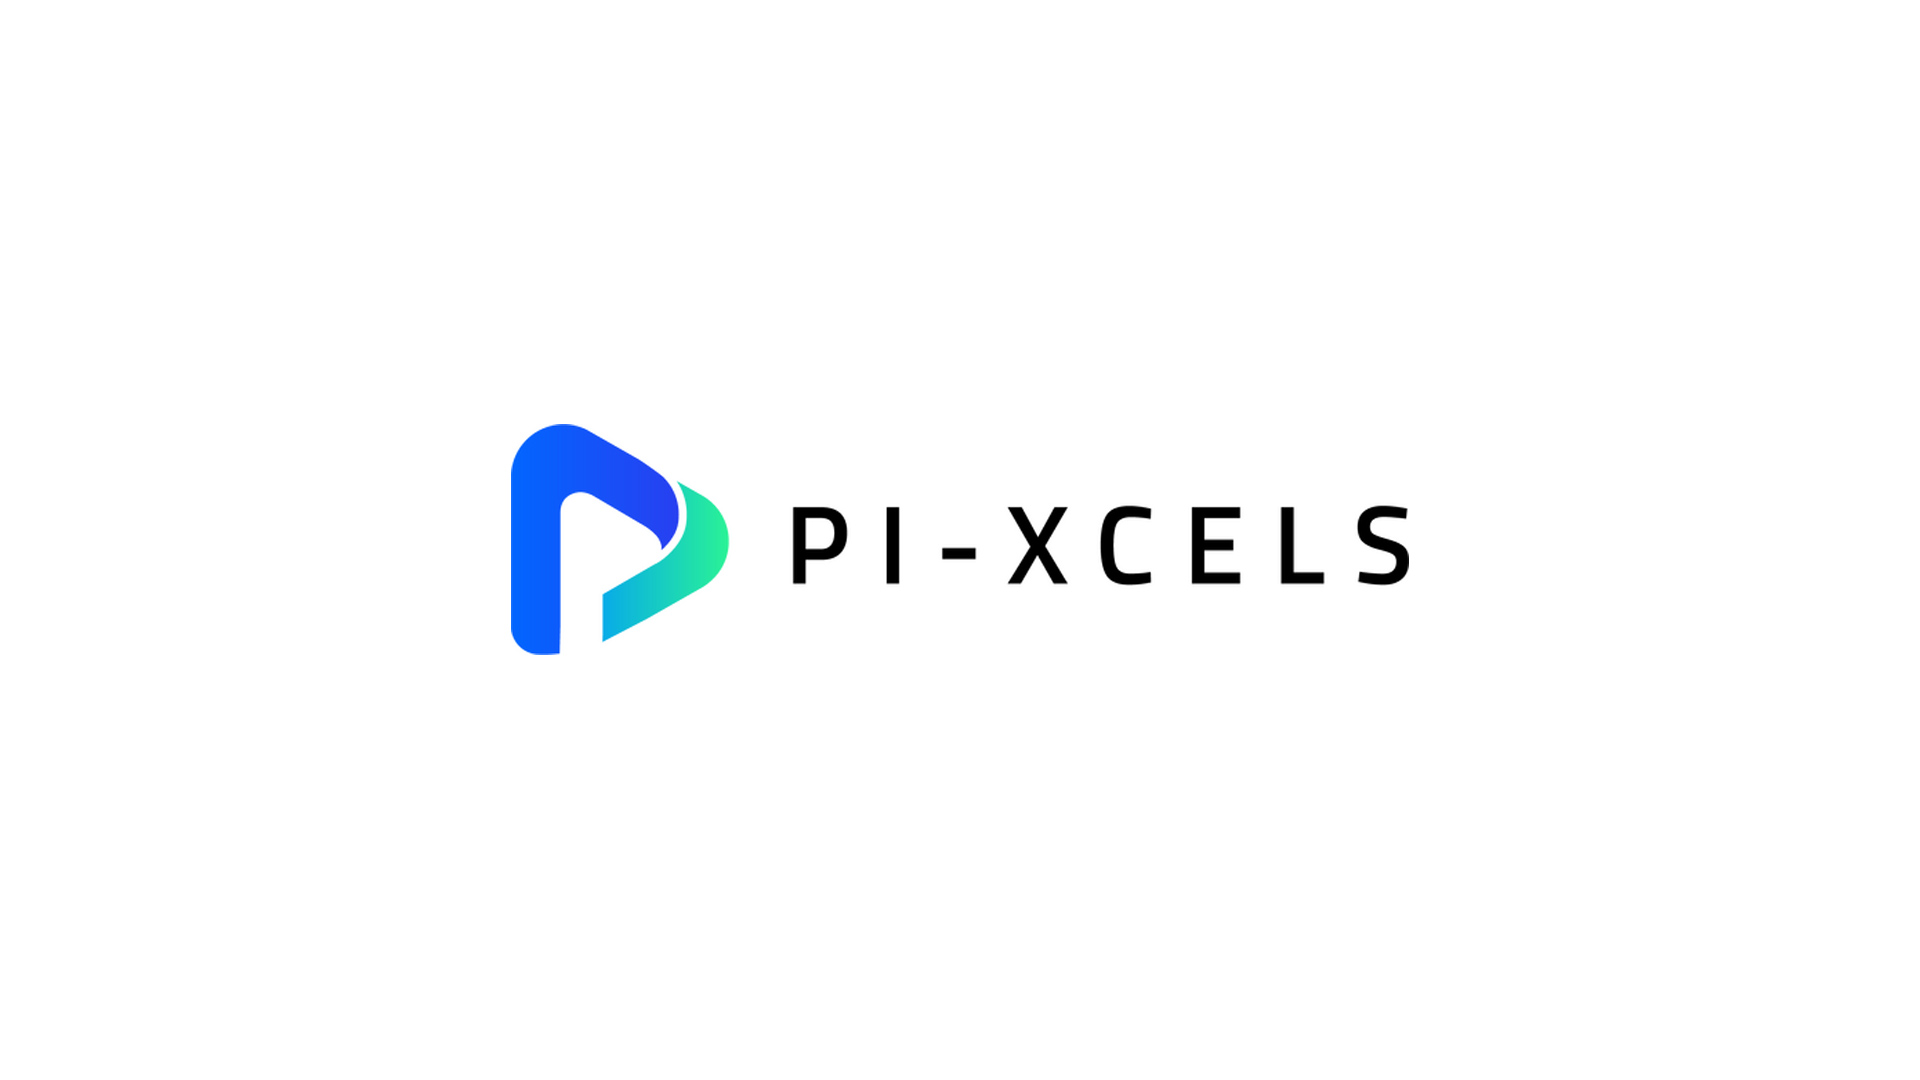 双方向の電子レシート技術で販売業者を支援するPi-xcels、170万ドルの資金調達